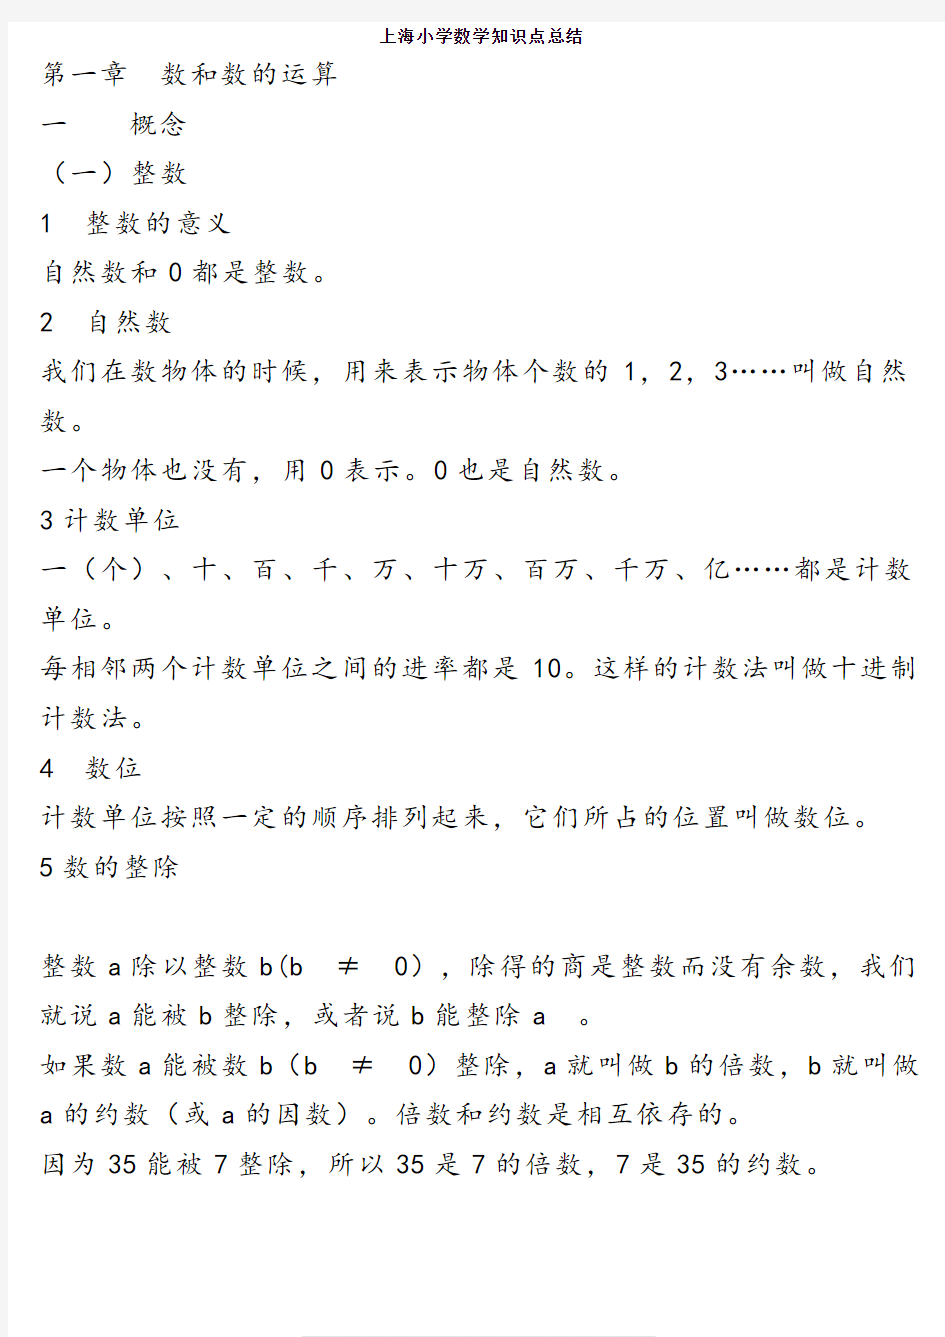 上海小学数学知识点总结